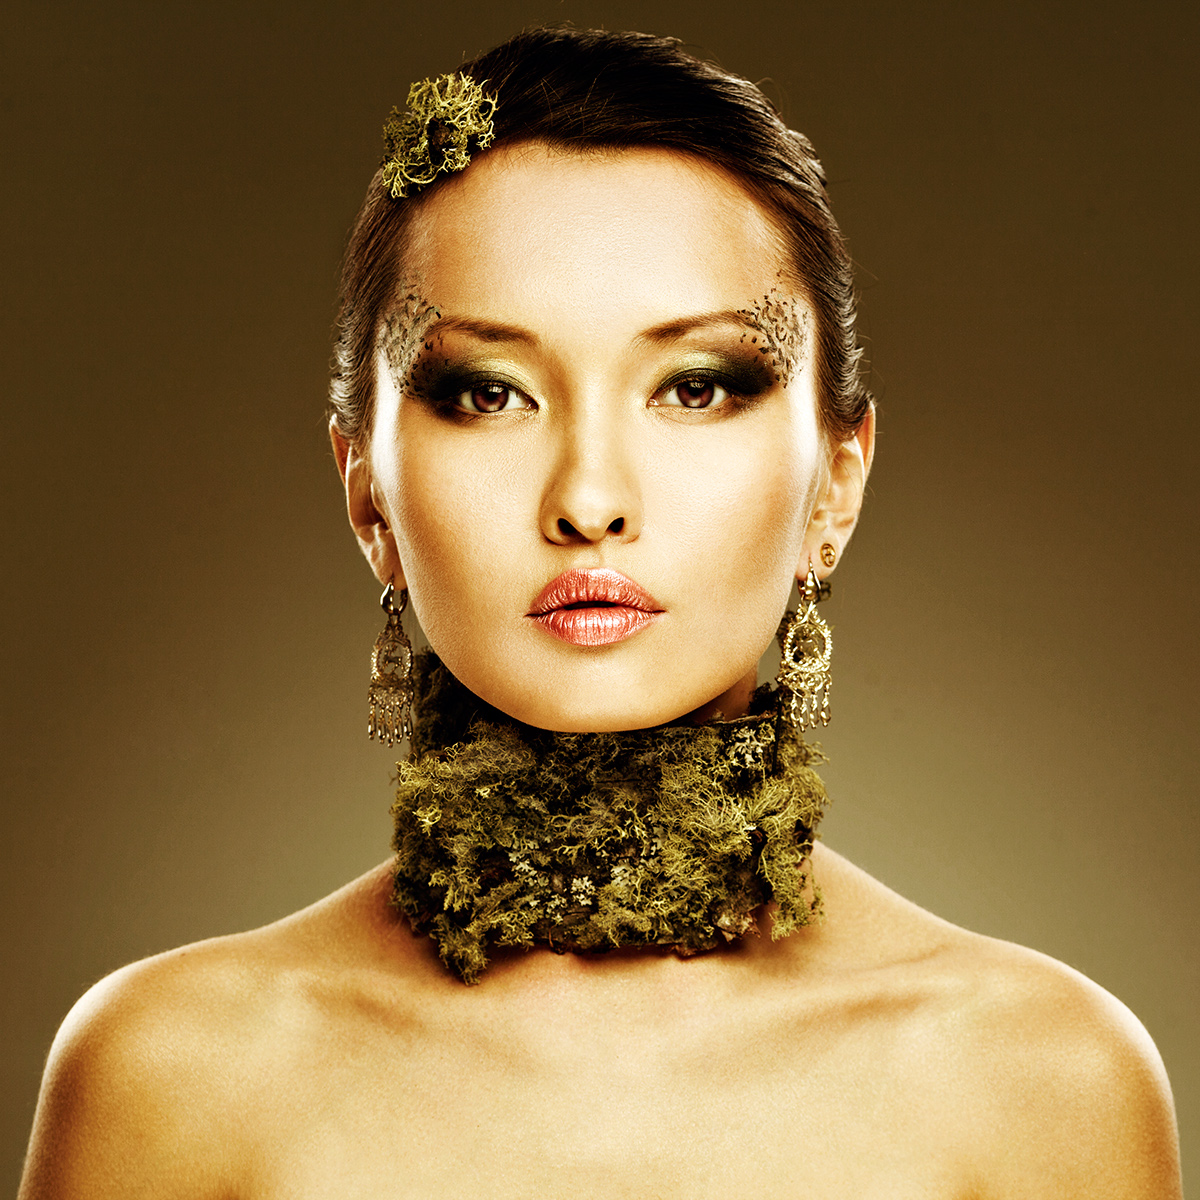 studio buryat-mongol girl asia models